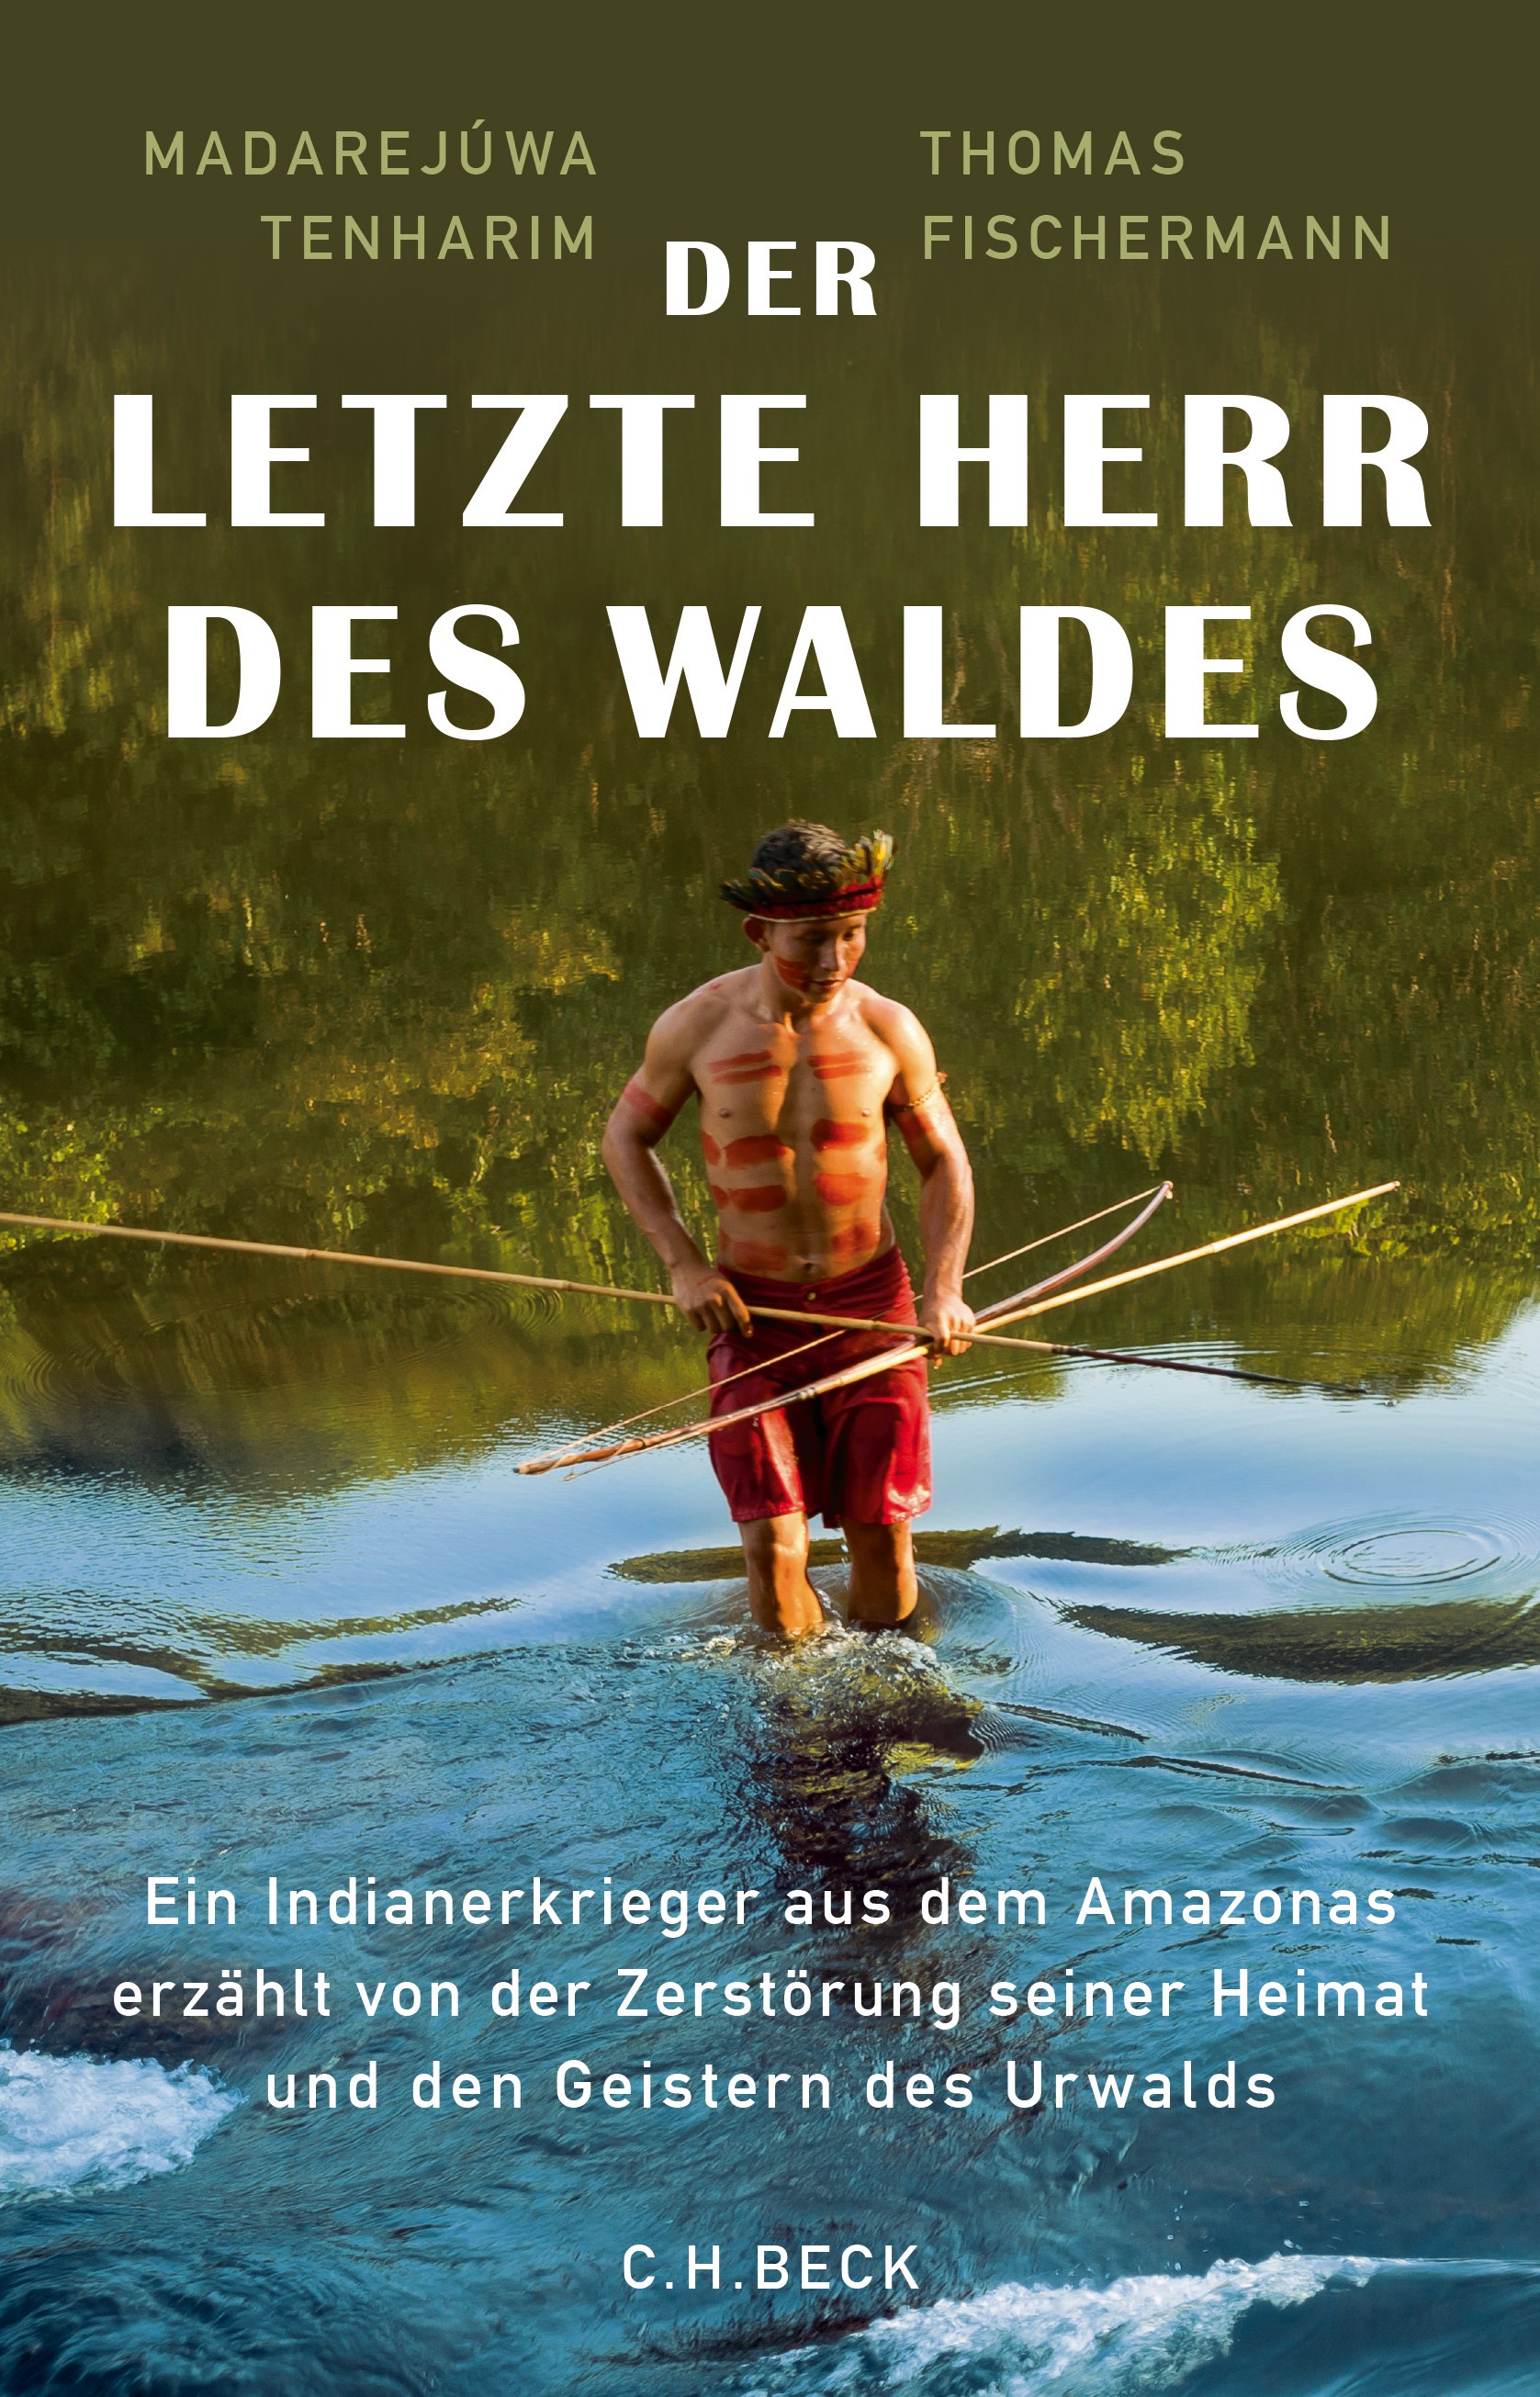 Cover: Tenharim, Madarejúwa / Fischermann, Thomas, Der letzte Herr des Waldes